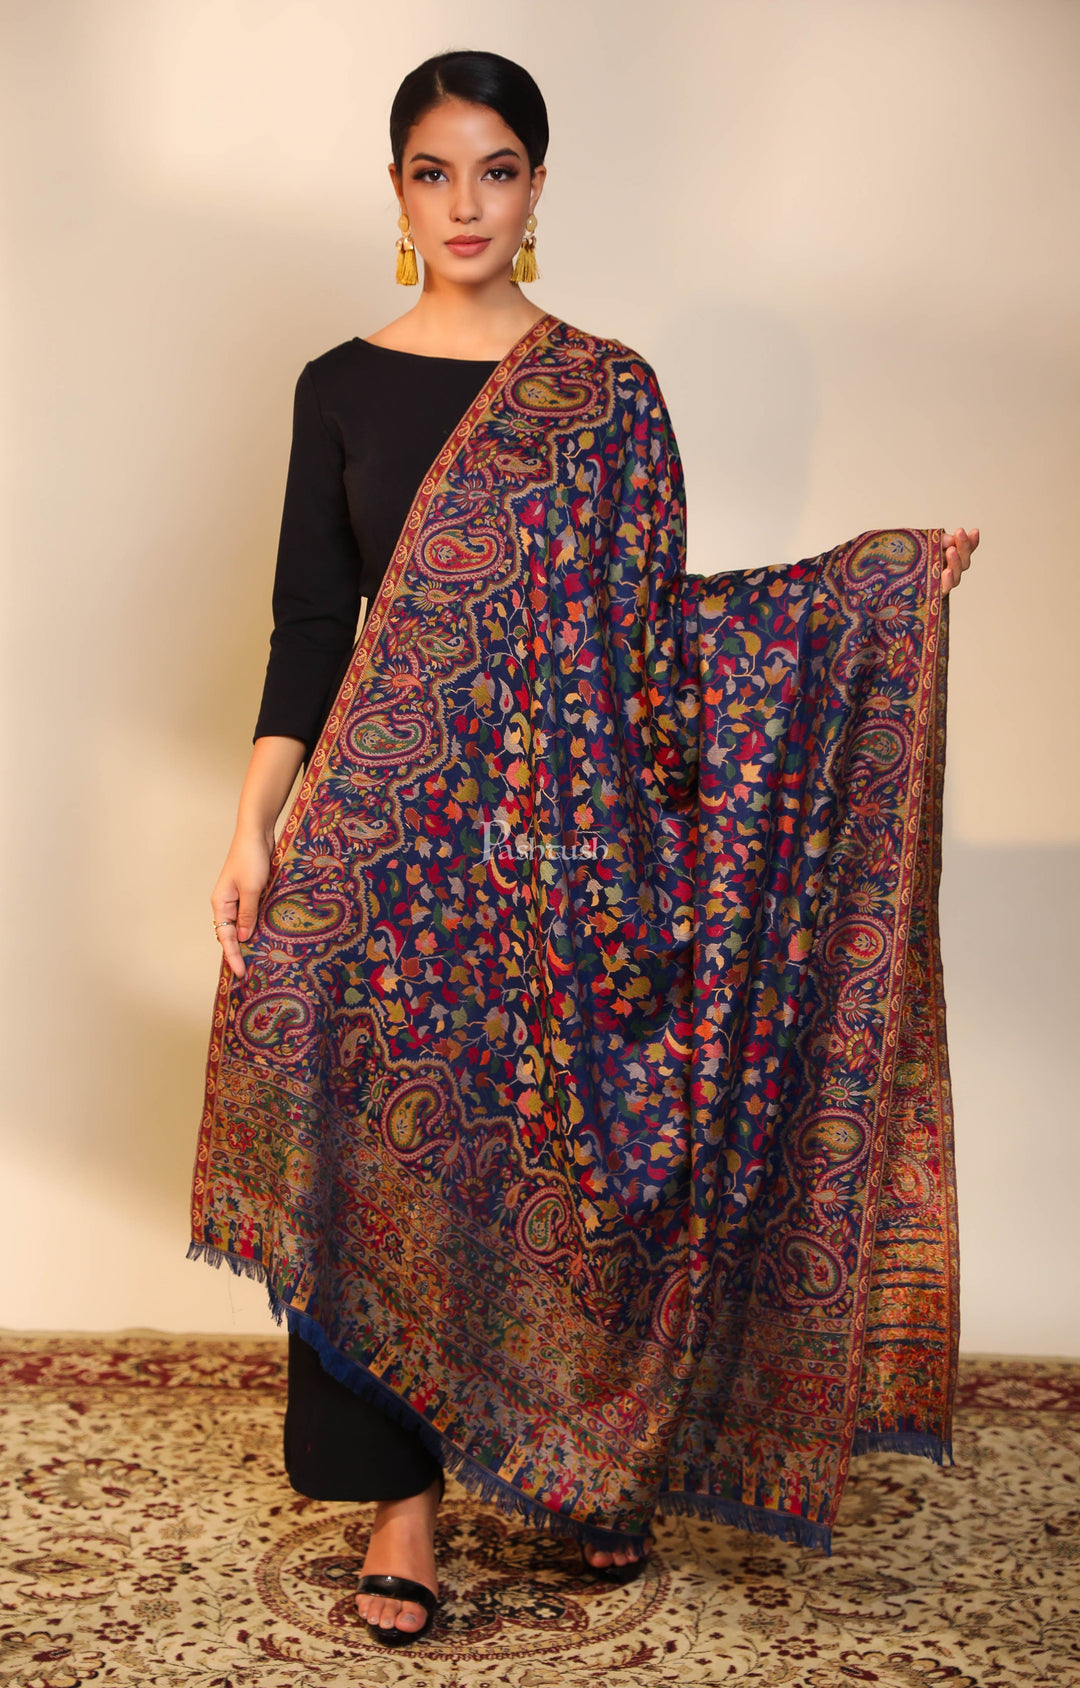 Pashtush India Womens Shawls Pashtush men faux pashmina shawl, ethnic weave design, multi color